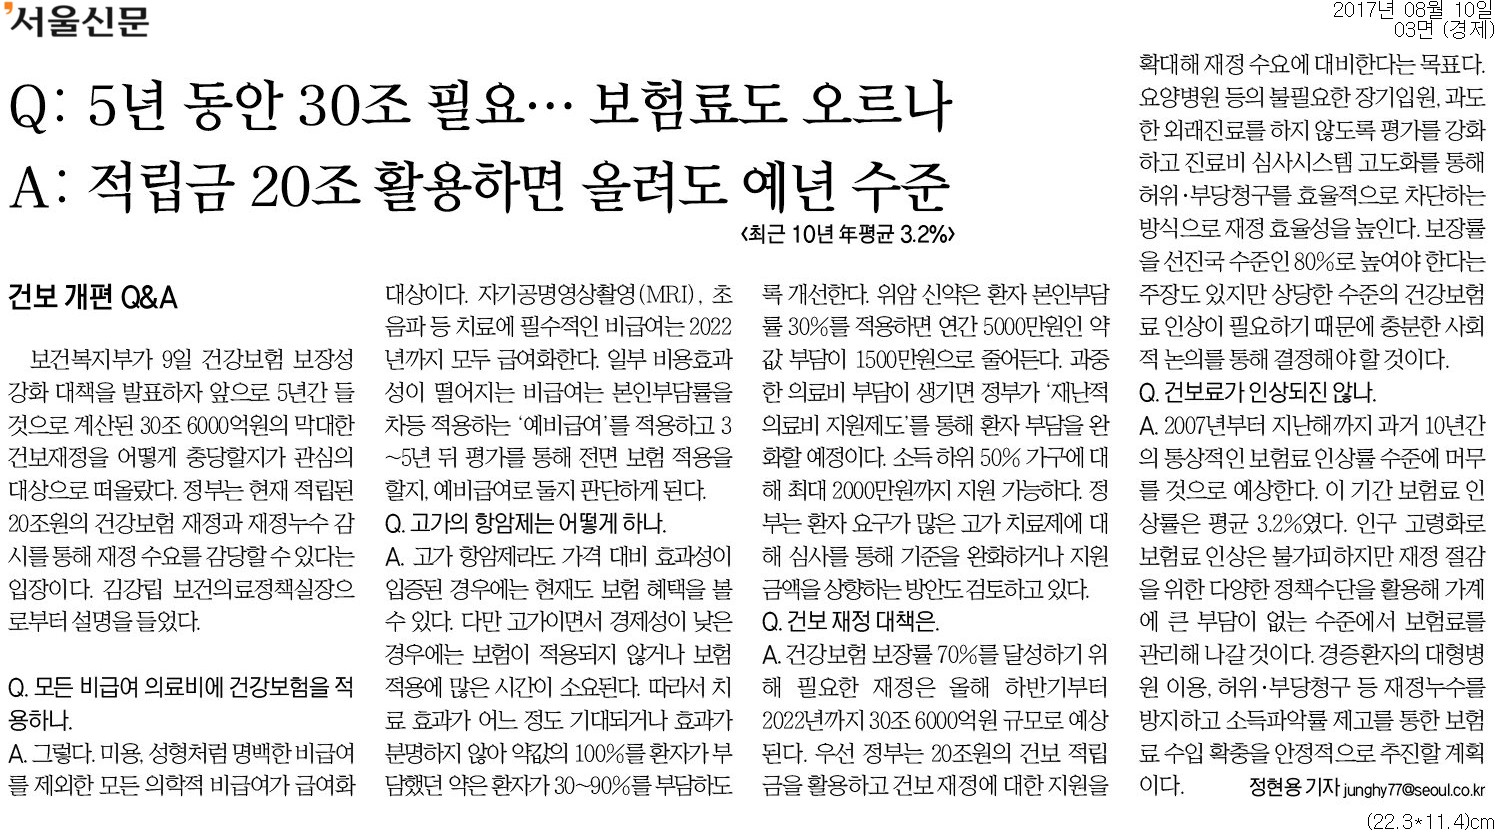 ▲ 서울신문 3면 기사